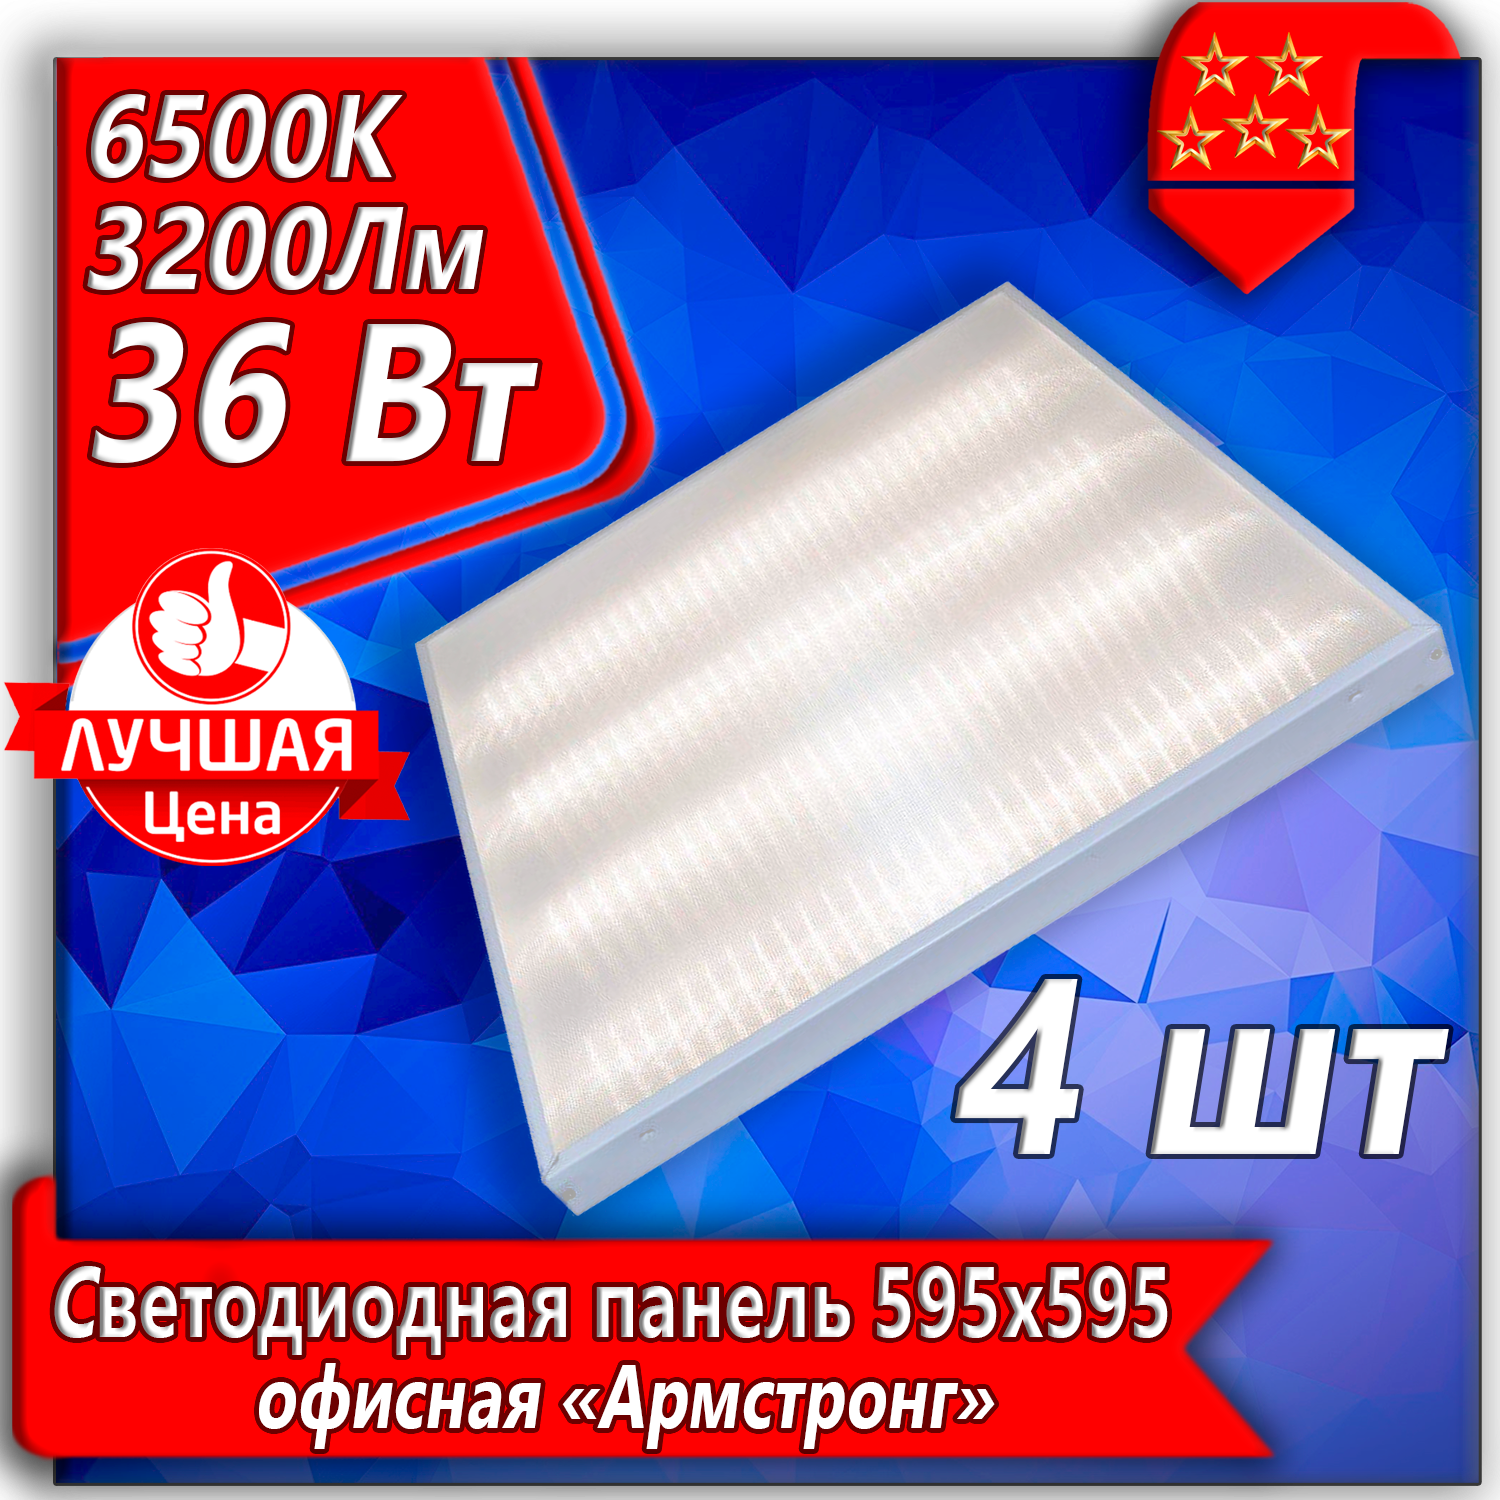 Потолочный светильник URAlight, светодиодная панель Армстронг LED 36Вт 4шт